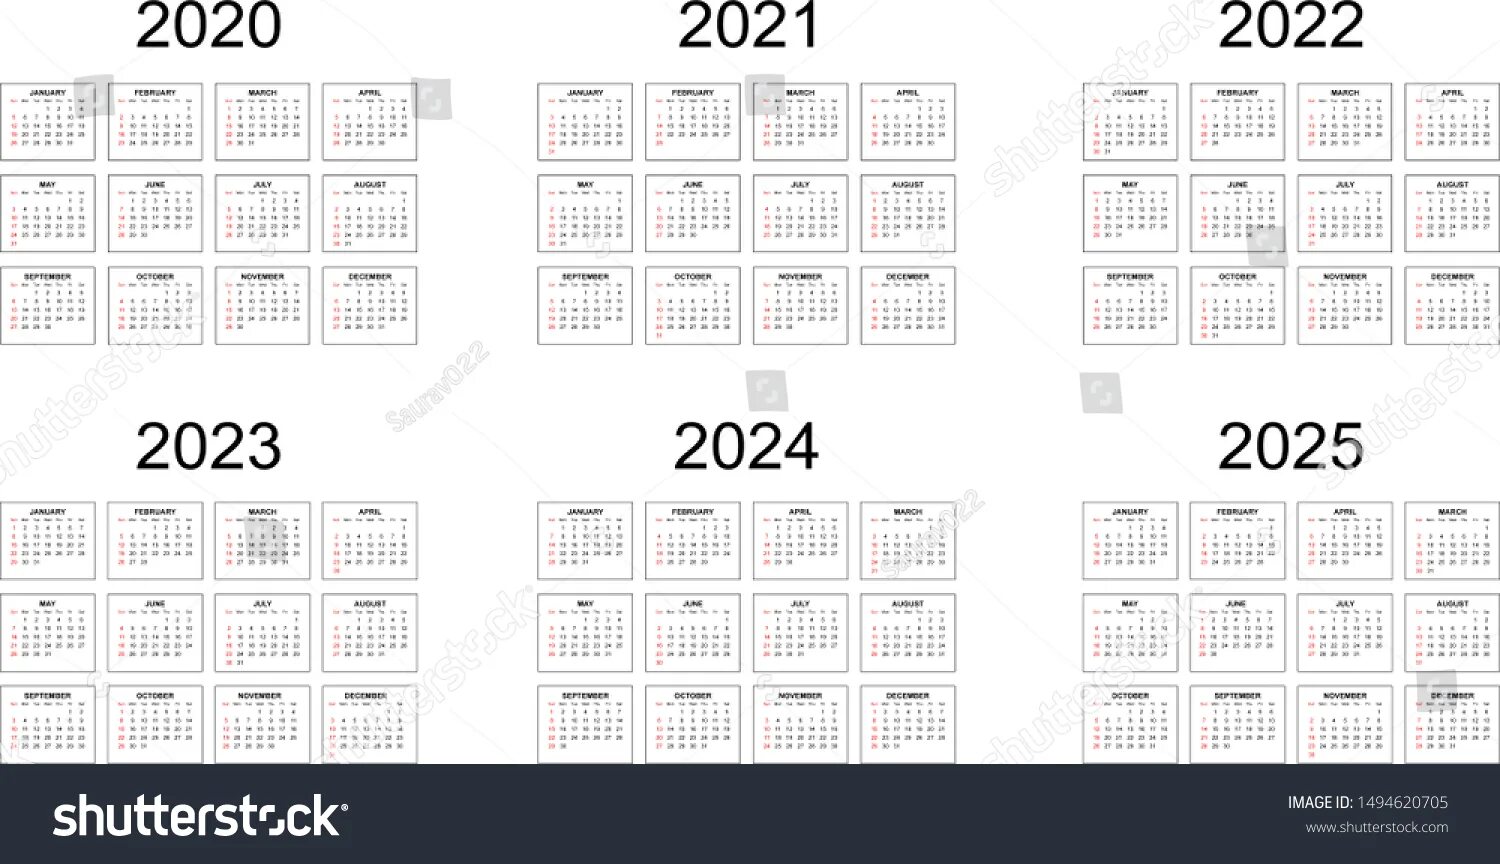 Календарь с 2020 по 2025 год. Календарь 2020 2021 2022 на одном листе. Календарная сетка 2024. Календарь на 2022 год для ежедневника. Календарик маленький 2024